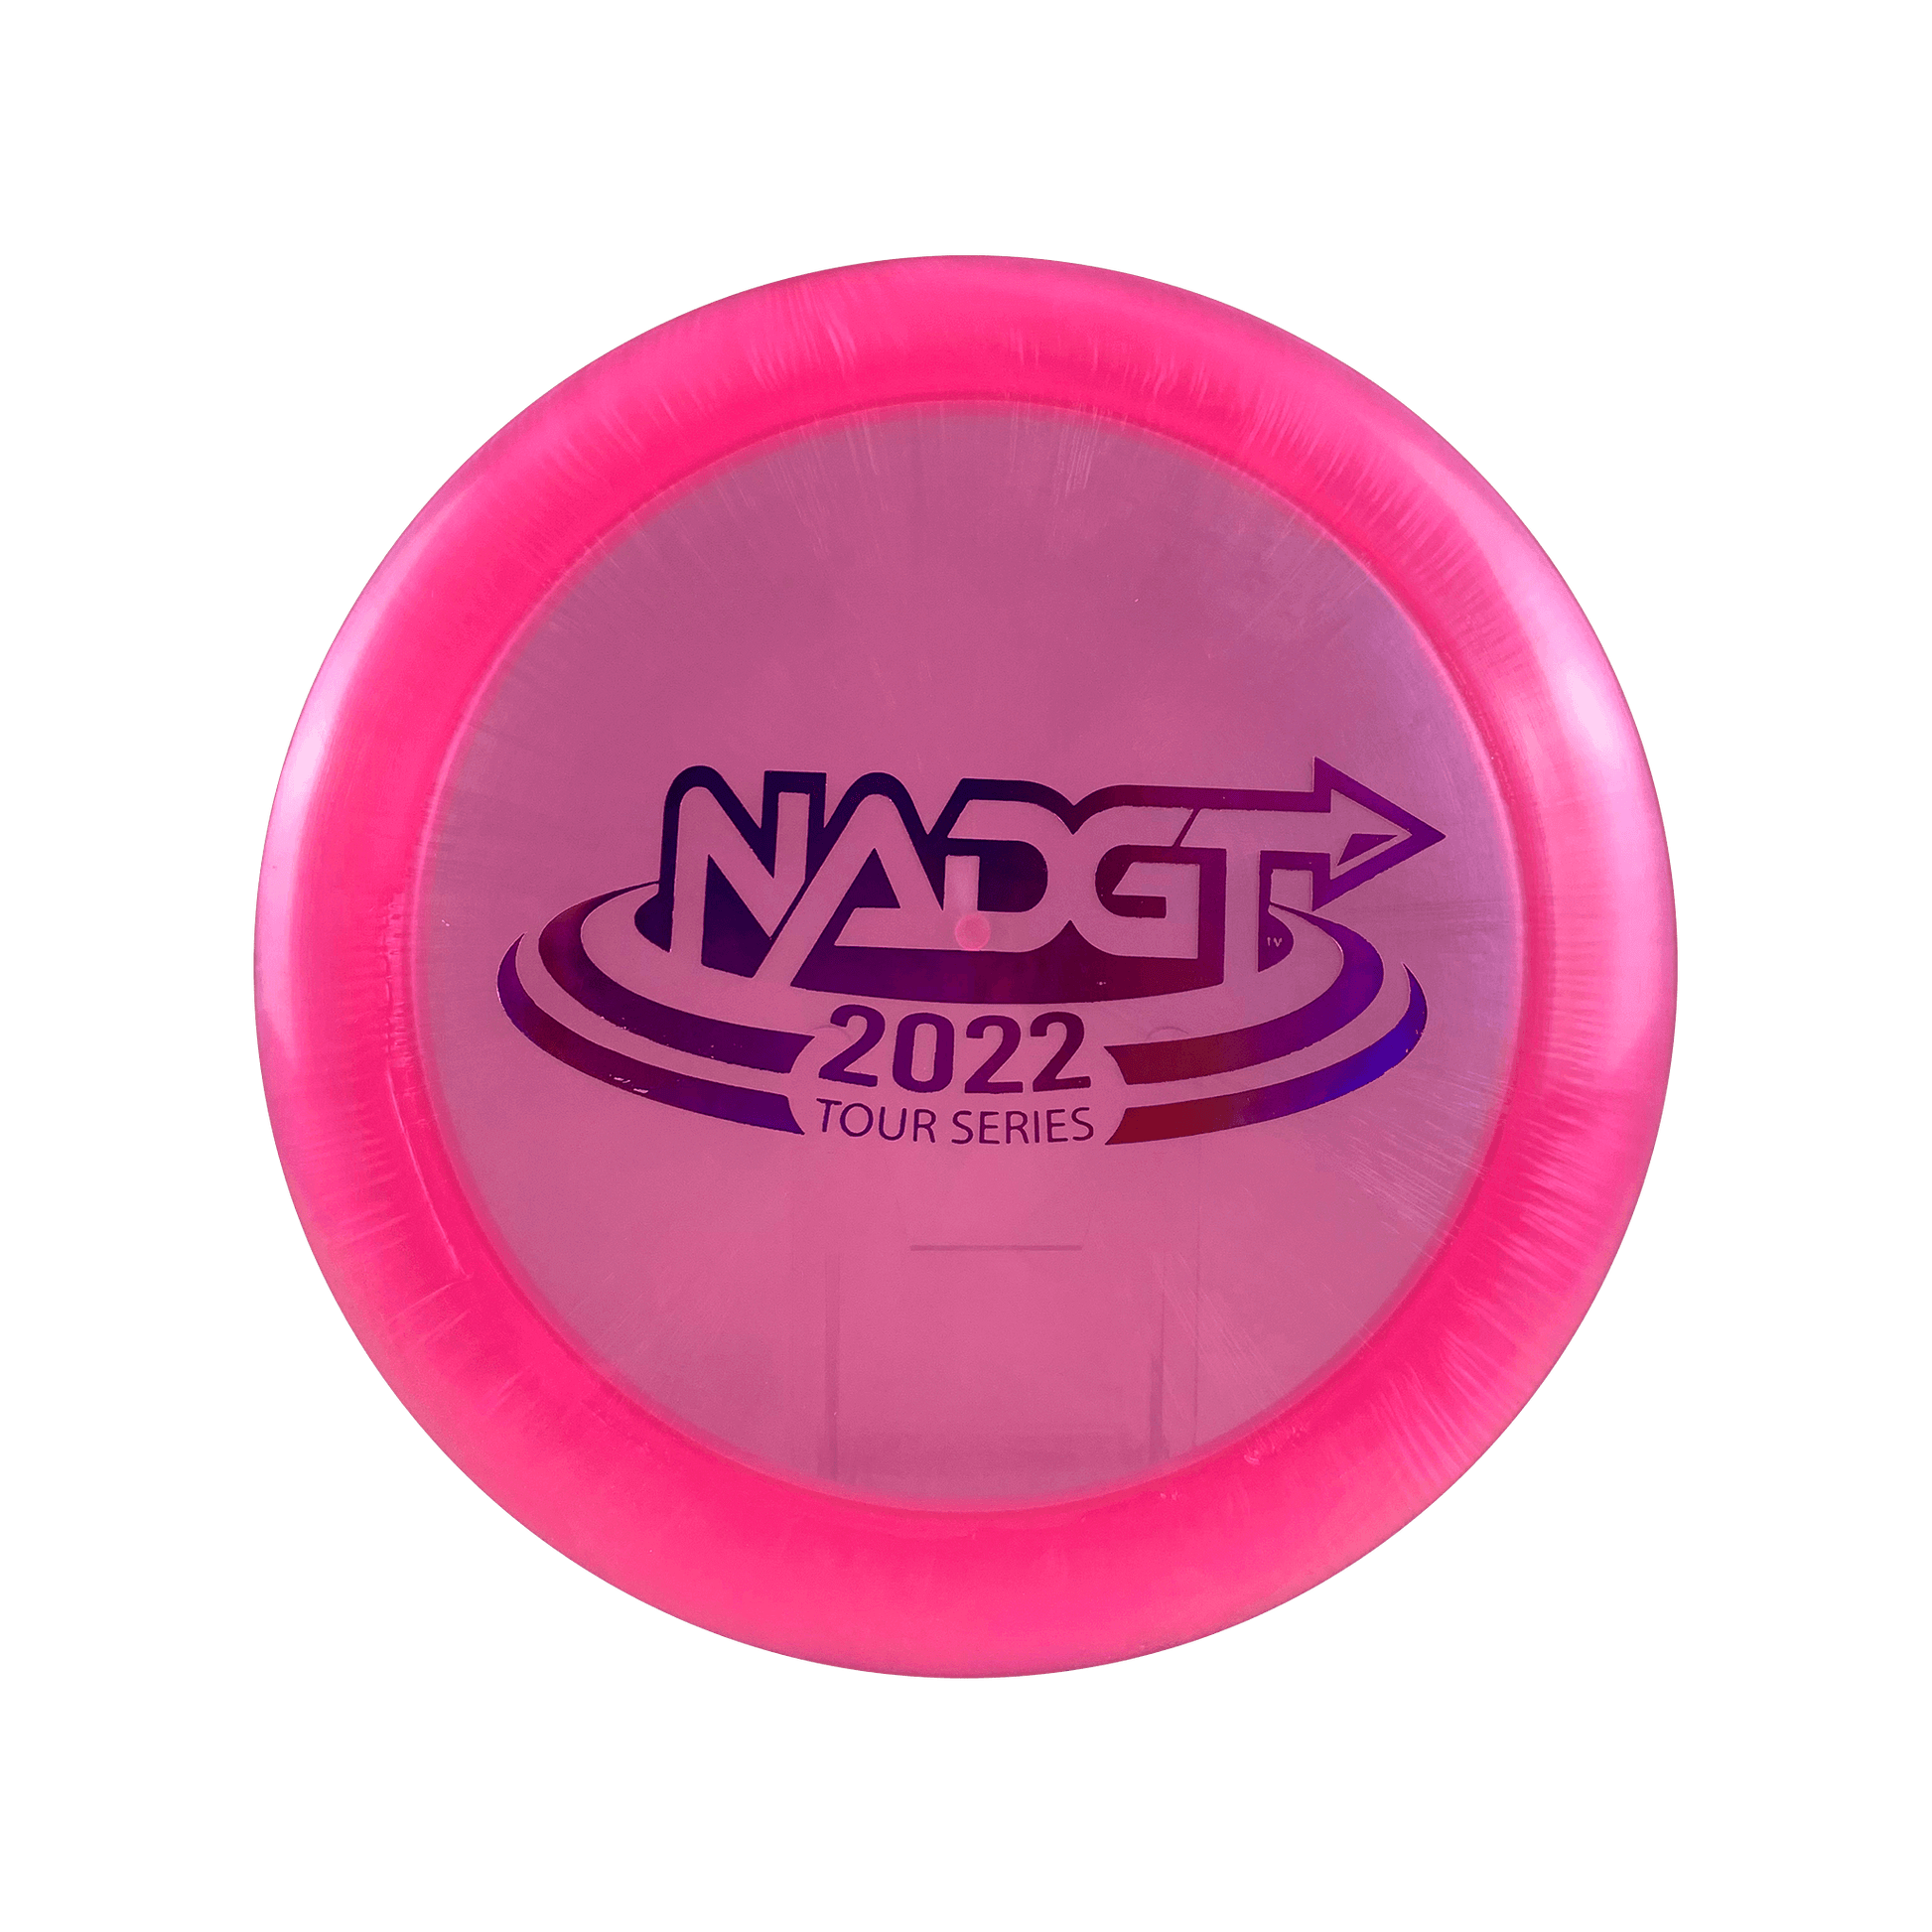 Z Nuke - NADGT Tour Series 2022 Disc Discraft hot pink 173 